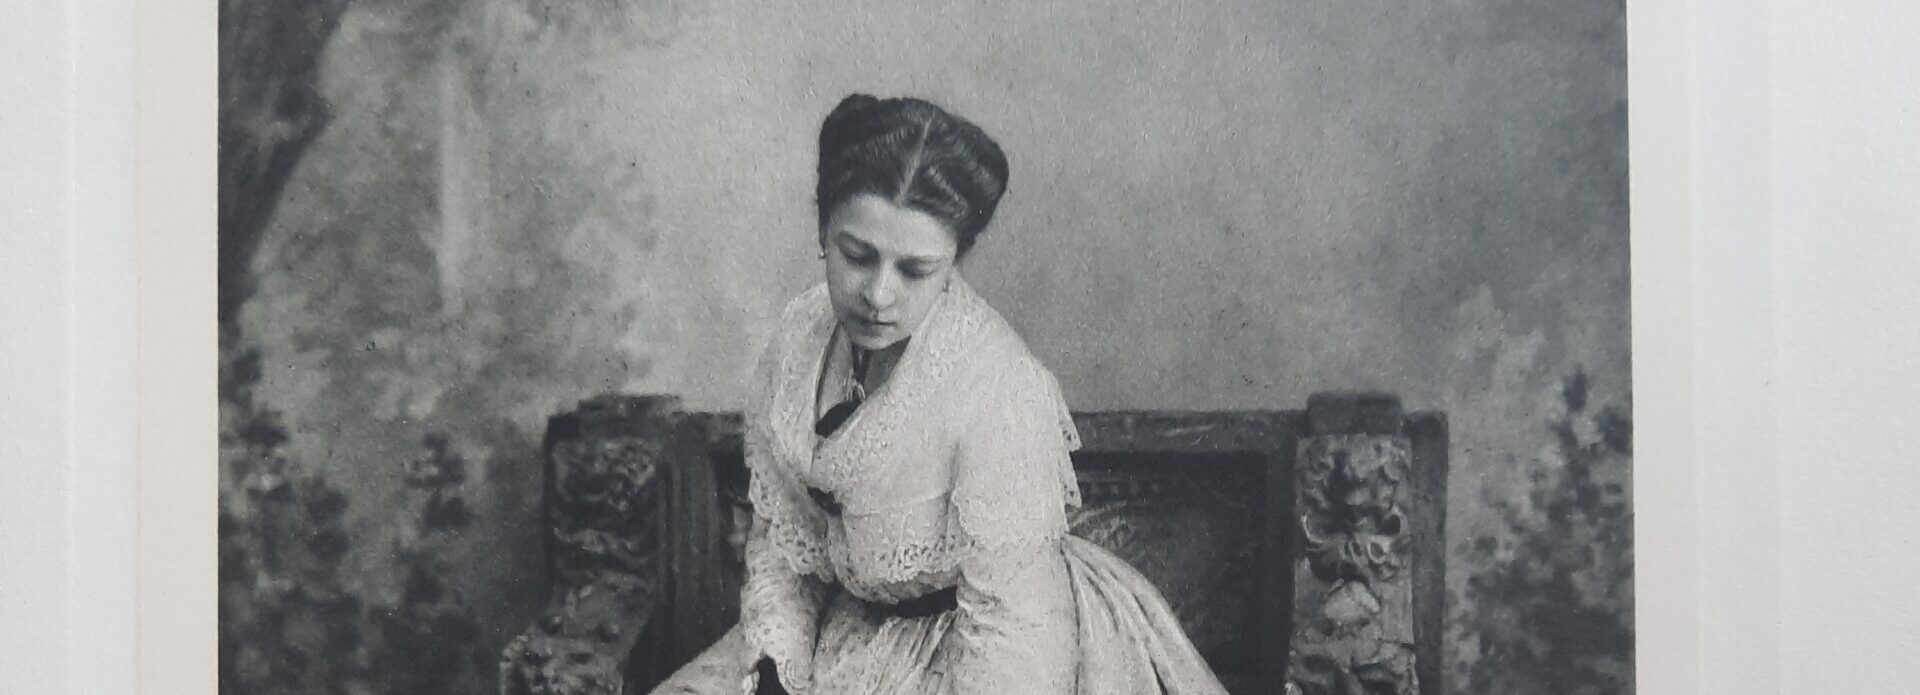 11 апреля – 170 лет со дня рождения заслуженной актрисы Императорских театров Марии Гавриловны Савиной (1854-1915)